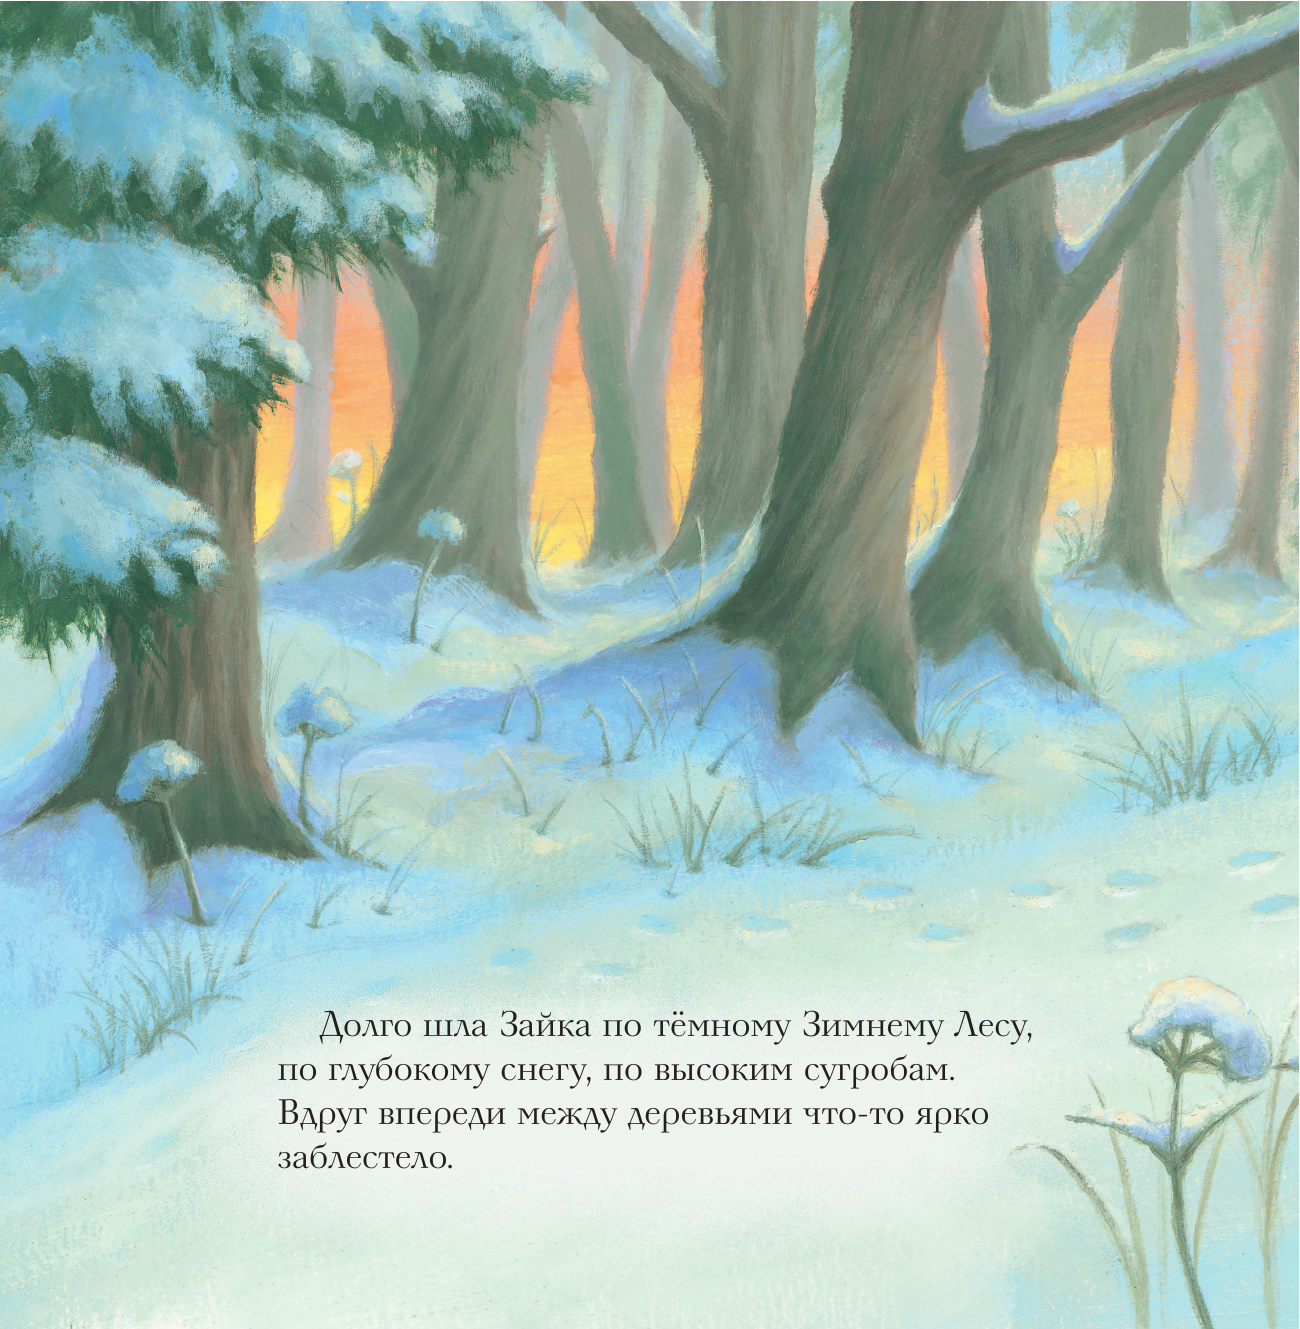 Новогодняя мечта Снежной Зайки (ил. Р. Харри) - фото №20